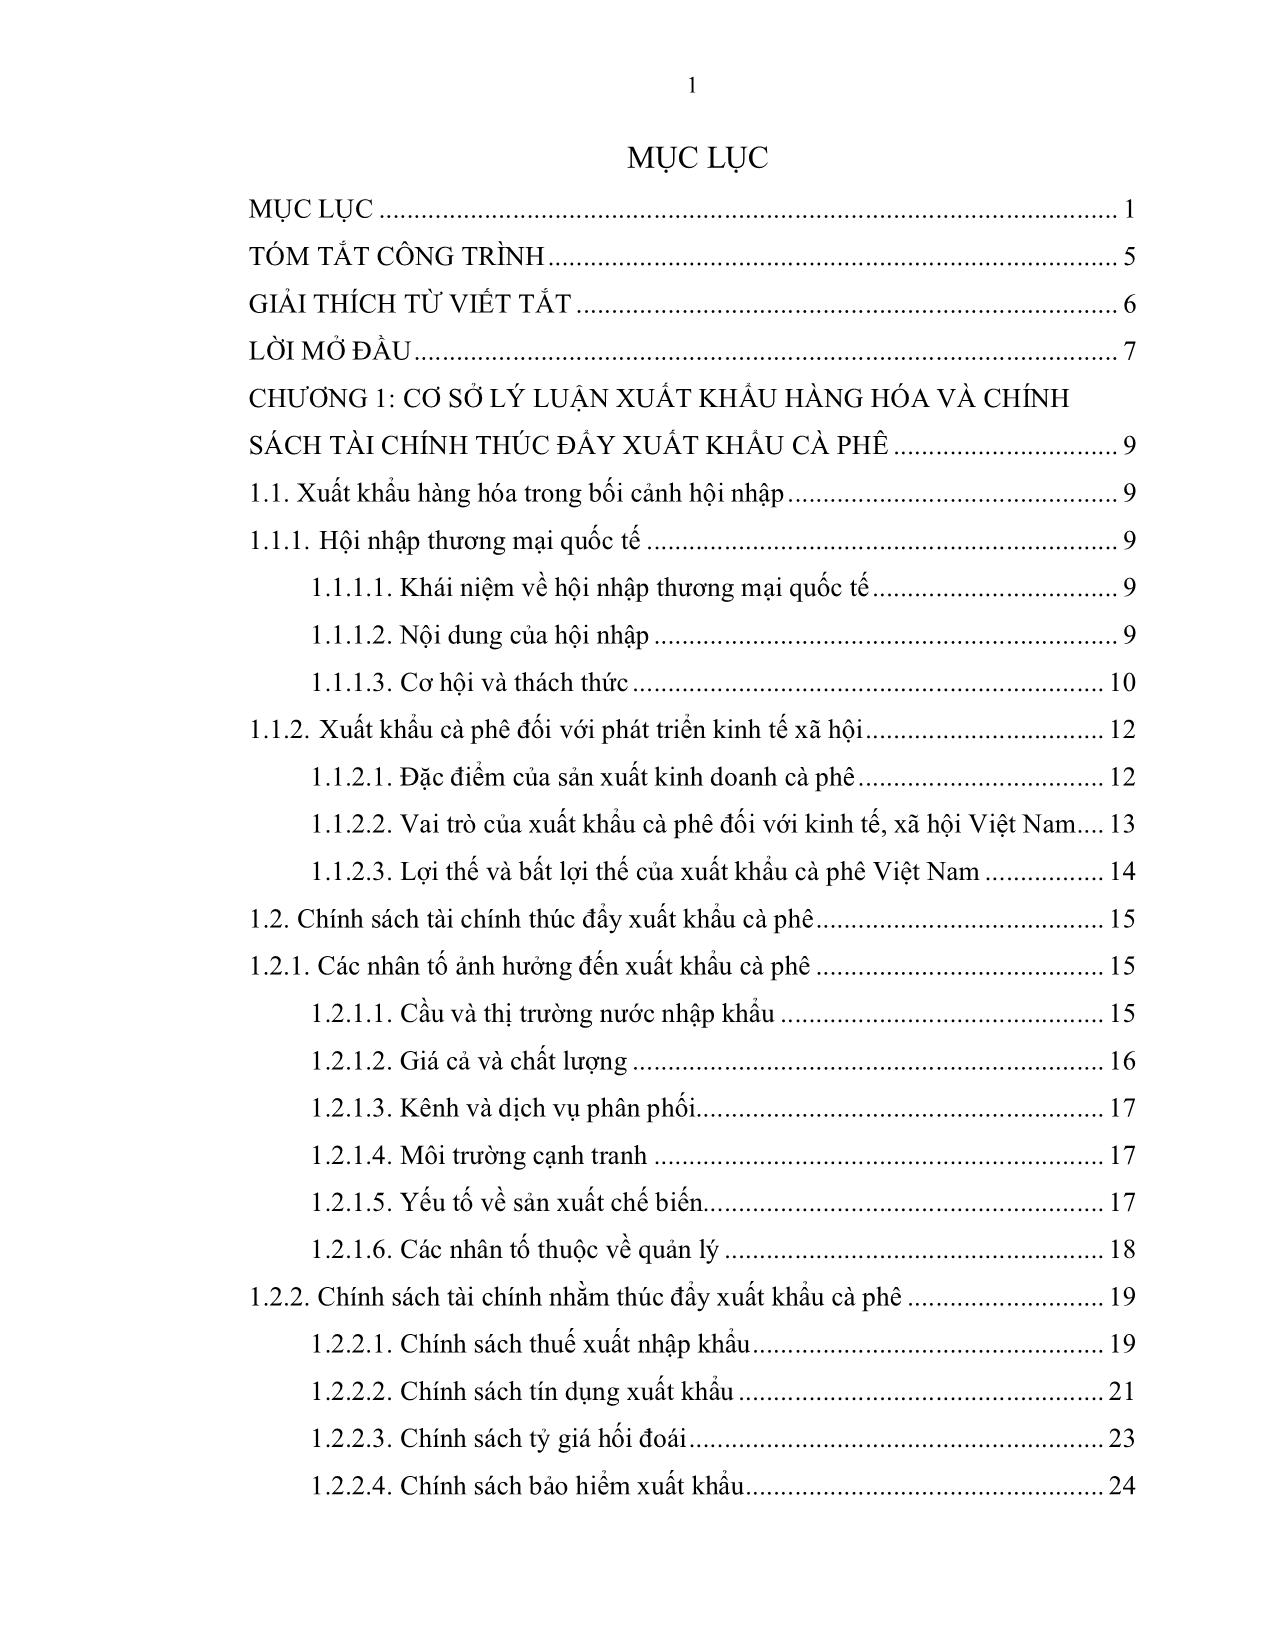 Đề tài Một số giải pháp về chính sách tài chính nhằm thúc đẩy xuất khẩu cà phê Việt Nam sang thị trường Hoa Kỳ trang 1